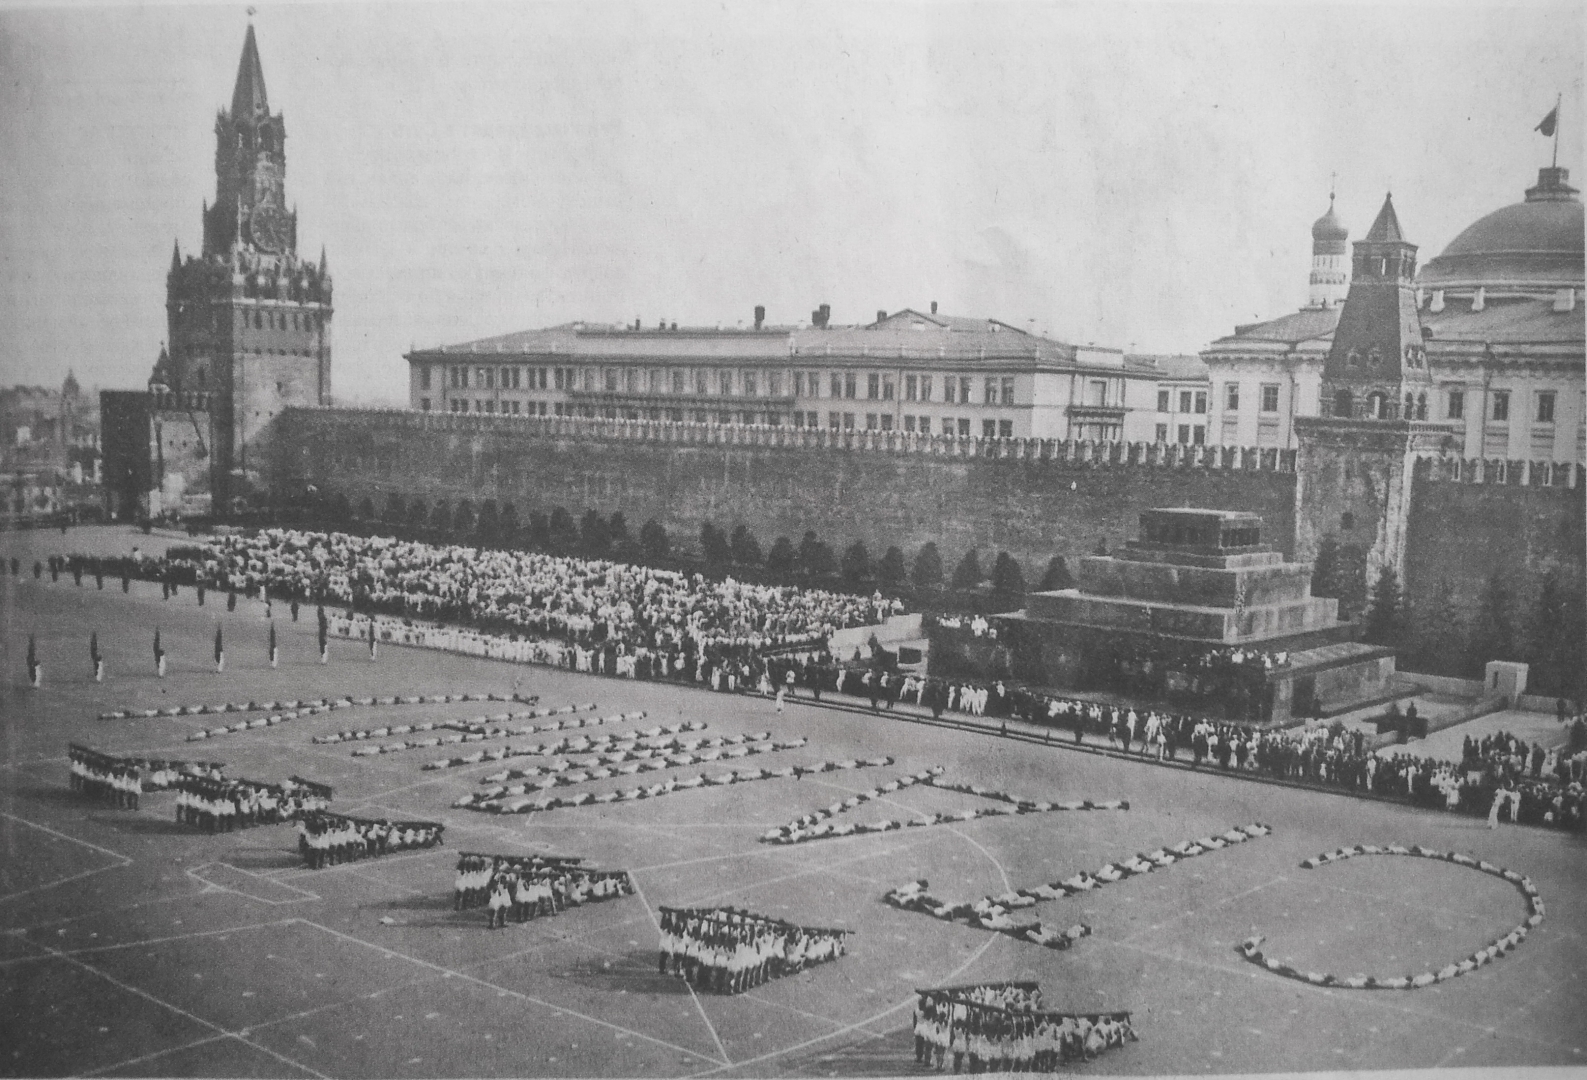 Сталин 1937 год. Москва красная площадь 1937. Парад на красной площади 1937. 1 Мая 1937 года в Москве. Военный парад на красной площади. Москва, 1937 год.